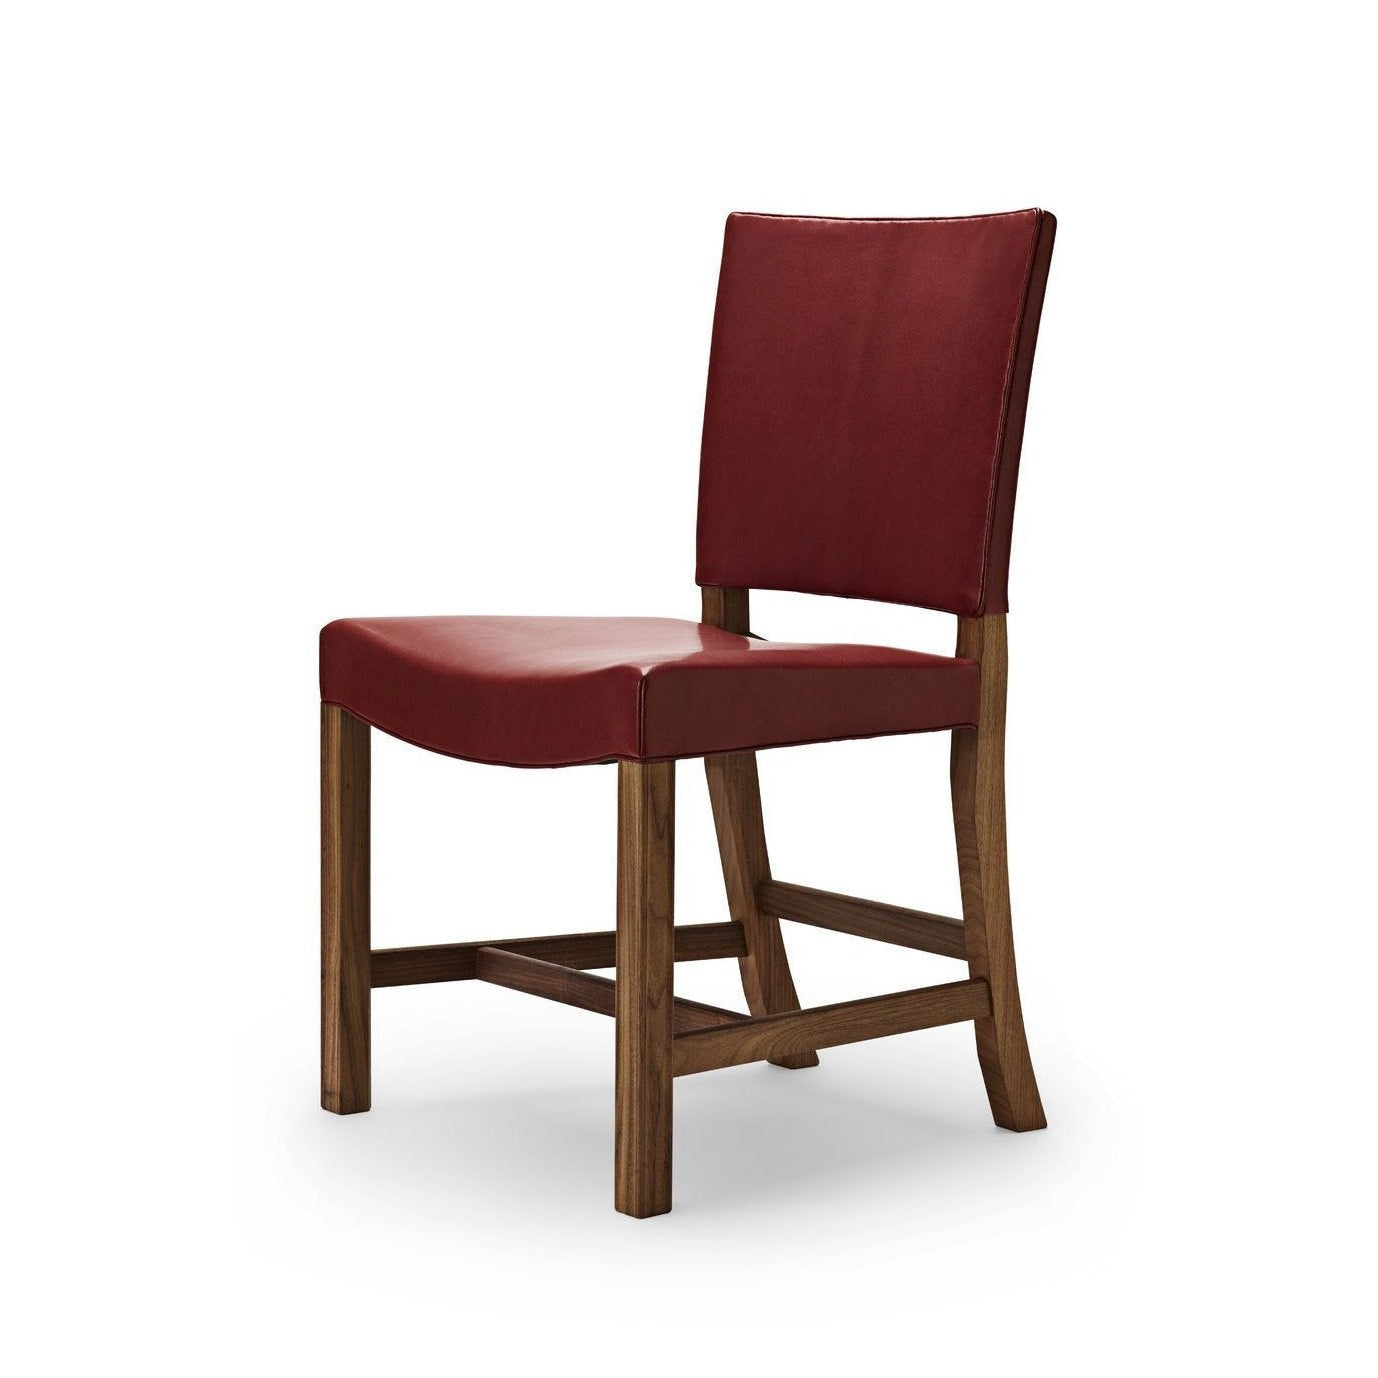 Carl Hansen KK47510 La sedia rossa, pelle di capre in noce/rossa laccata